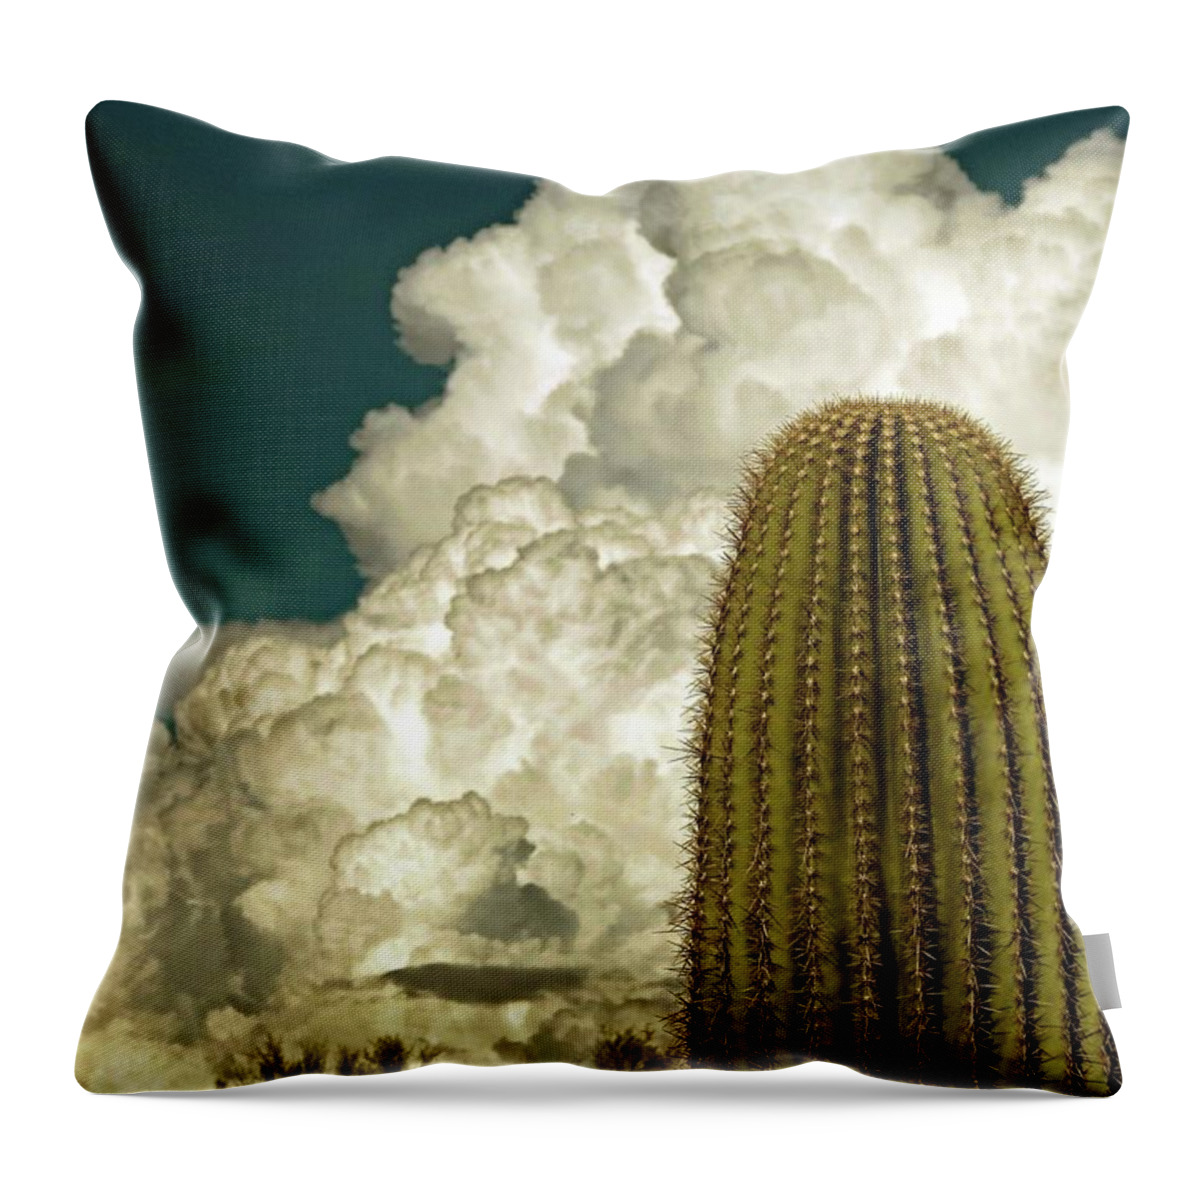 Saguaro Cactus Throw Pillow featuring the photograph Great Cloud by Hazel Vaughn